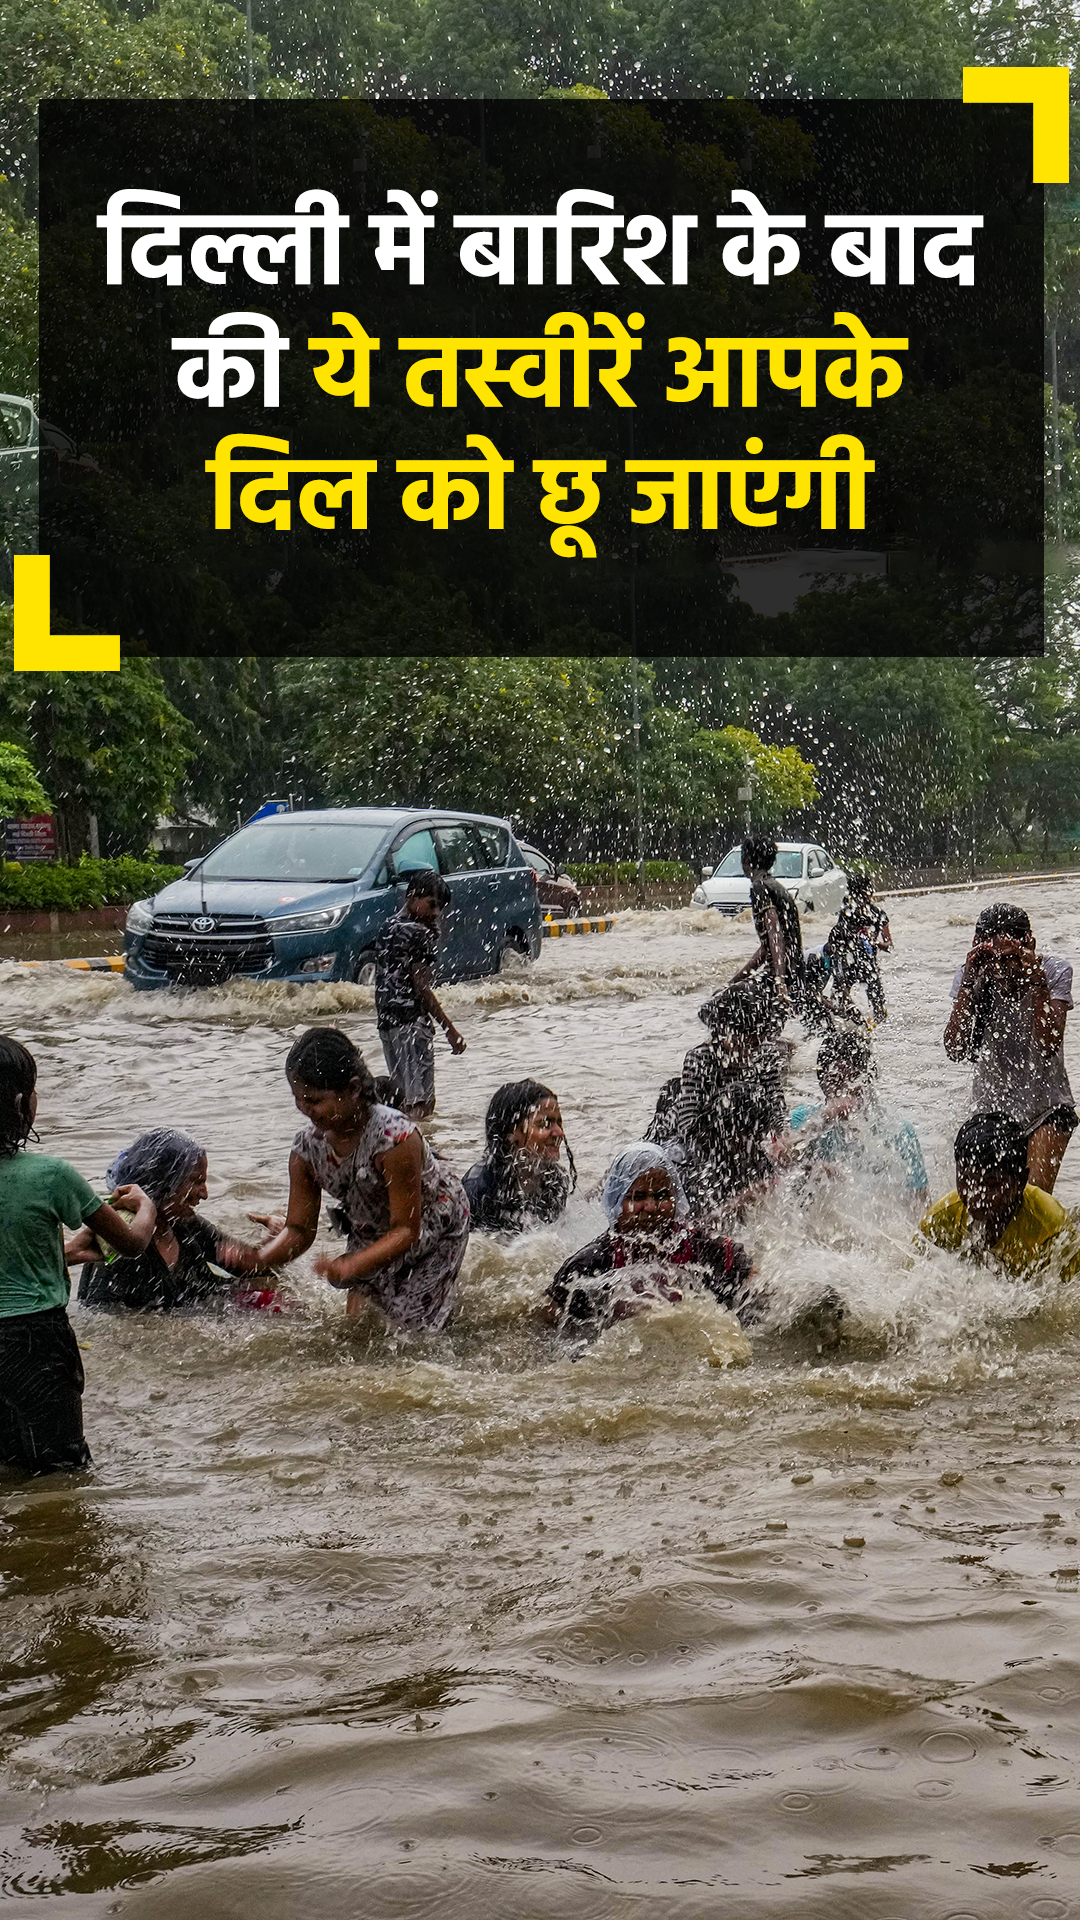 बारिश ने दिल्ली के मौसम को बनाया सुहाना, यहां देखें दिल को छू जाने वाली तस्वीरें 